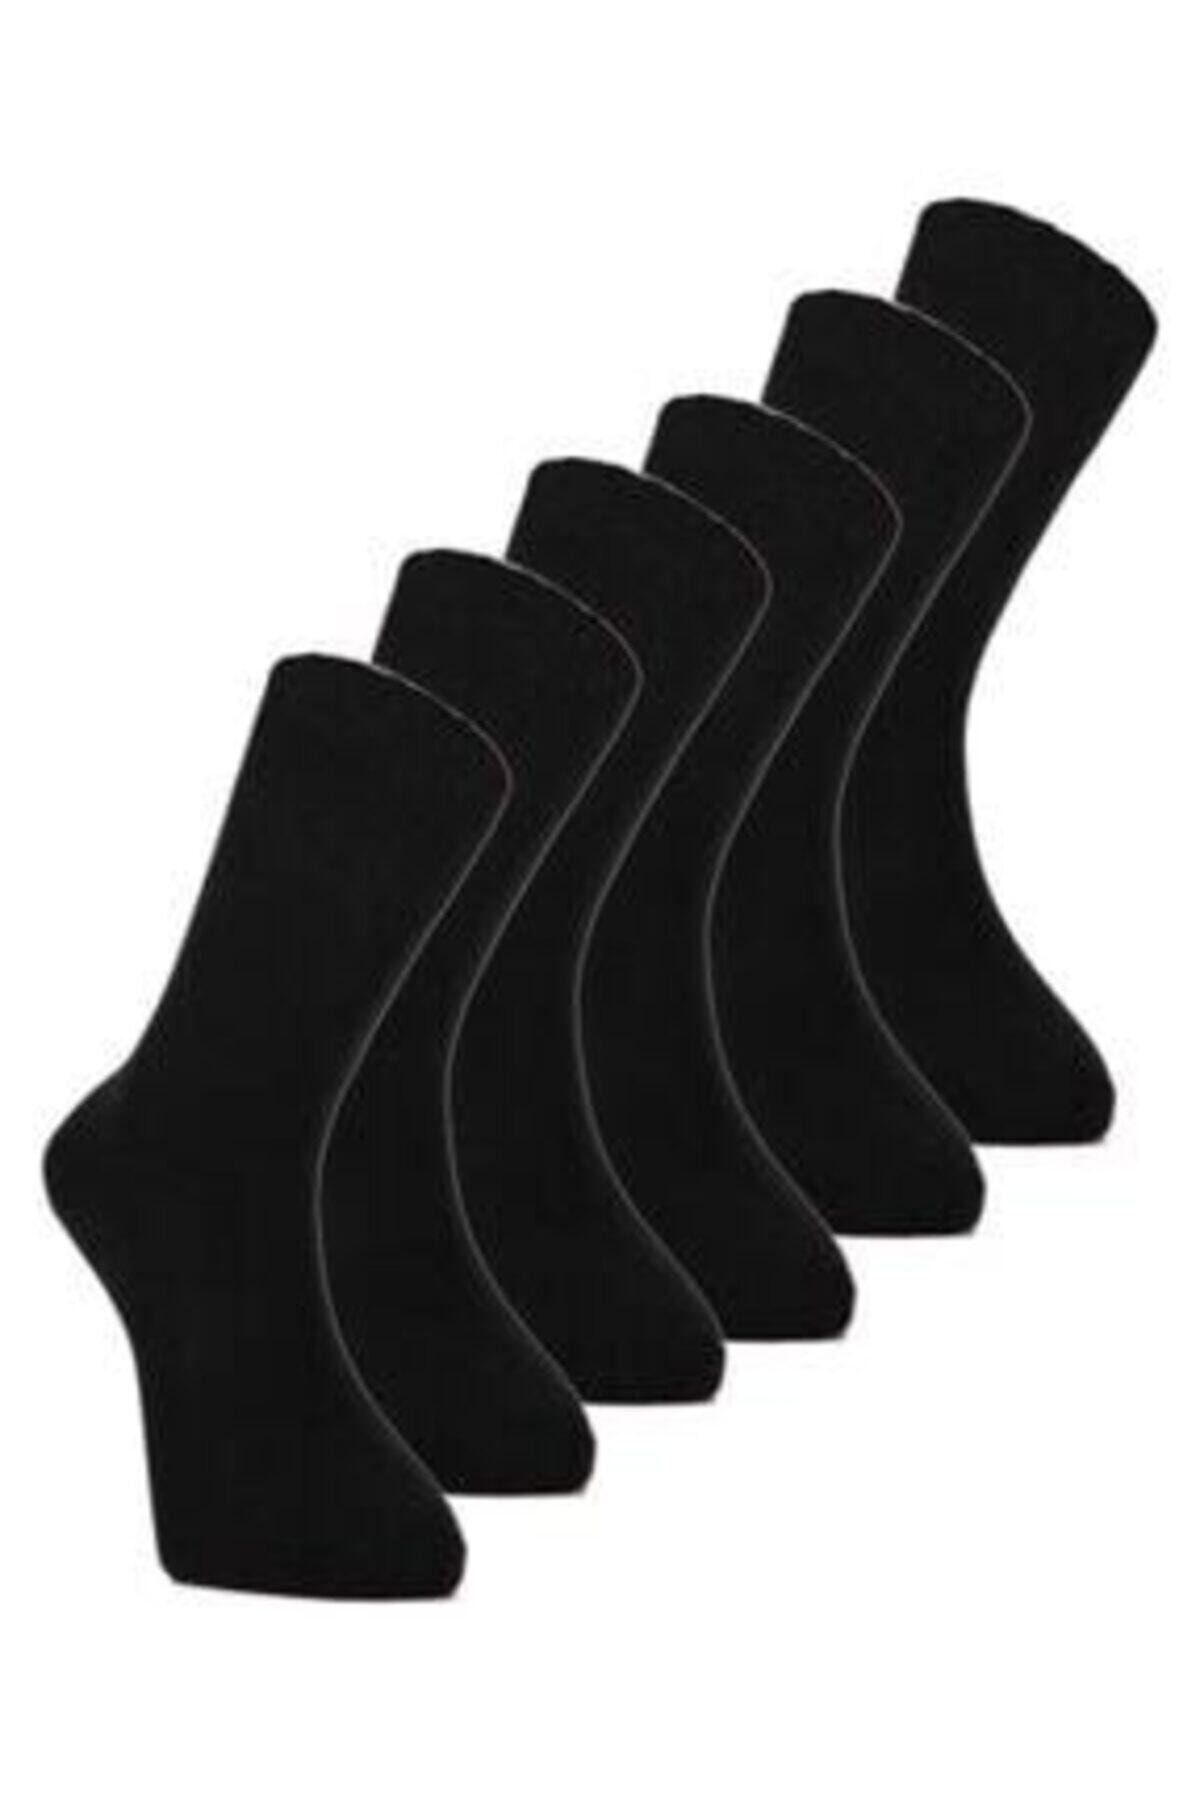 Nacar Ekonomik Pamuk Erkek Çorap Siyah 6'lı Set